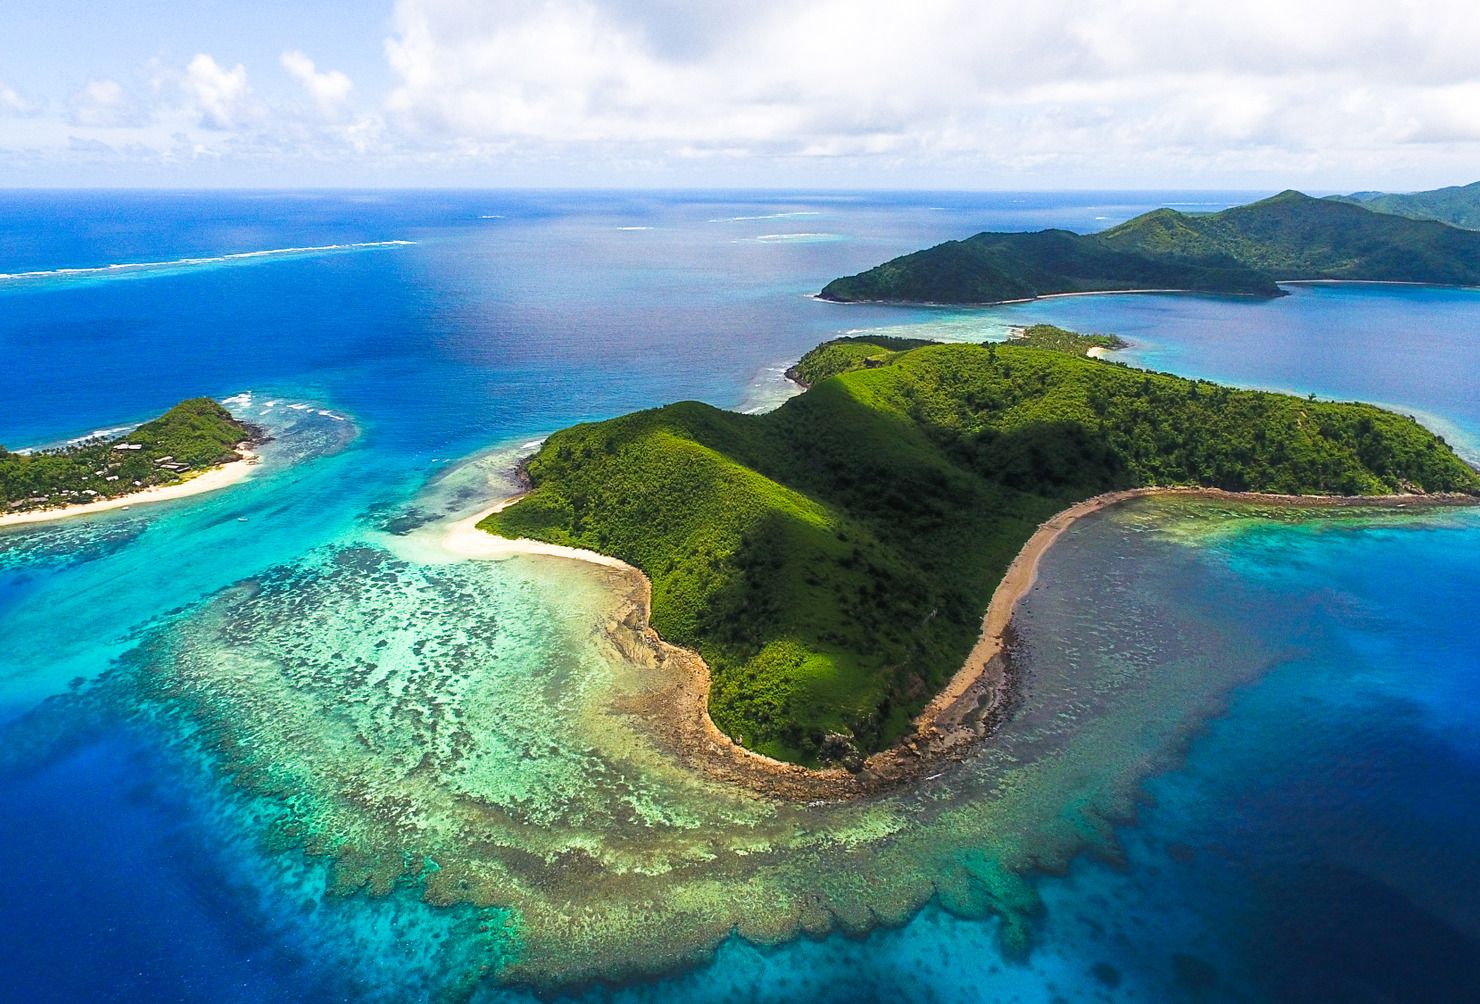 Крупнейшие архипелаги тихого океана. Фиджи Маманука. Острова Ясава Фиджи. Острова Лау, Фиджи. Архипелаг Фиджи.